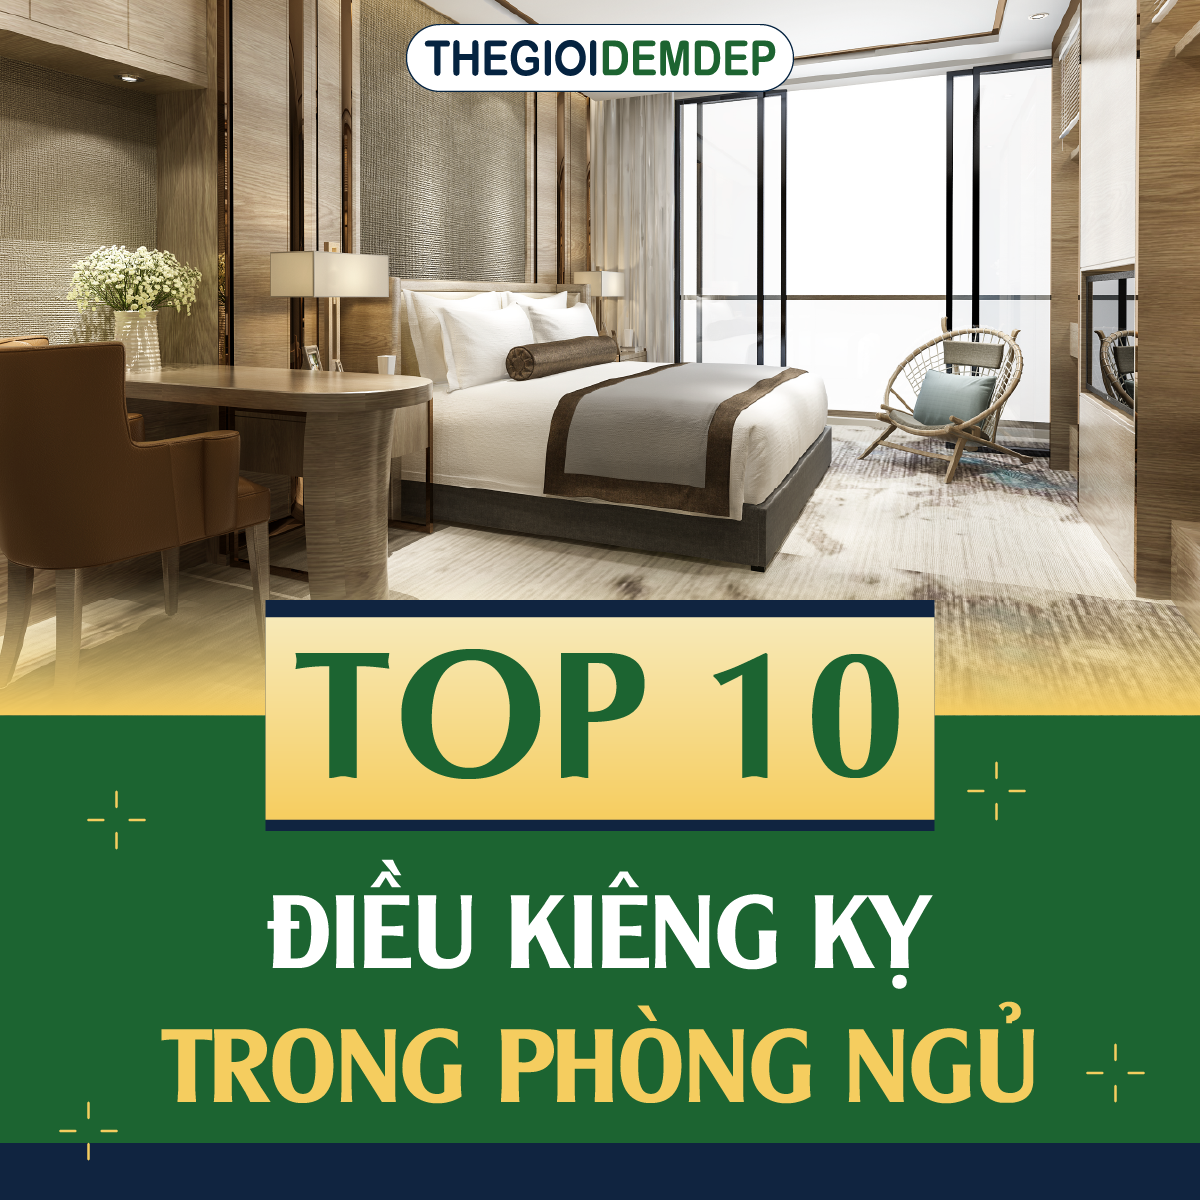 TOP 10 ĐIỀU KIÊNG KỴ KHI BÀI TRÍ PHÒNG NGỦ